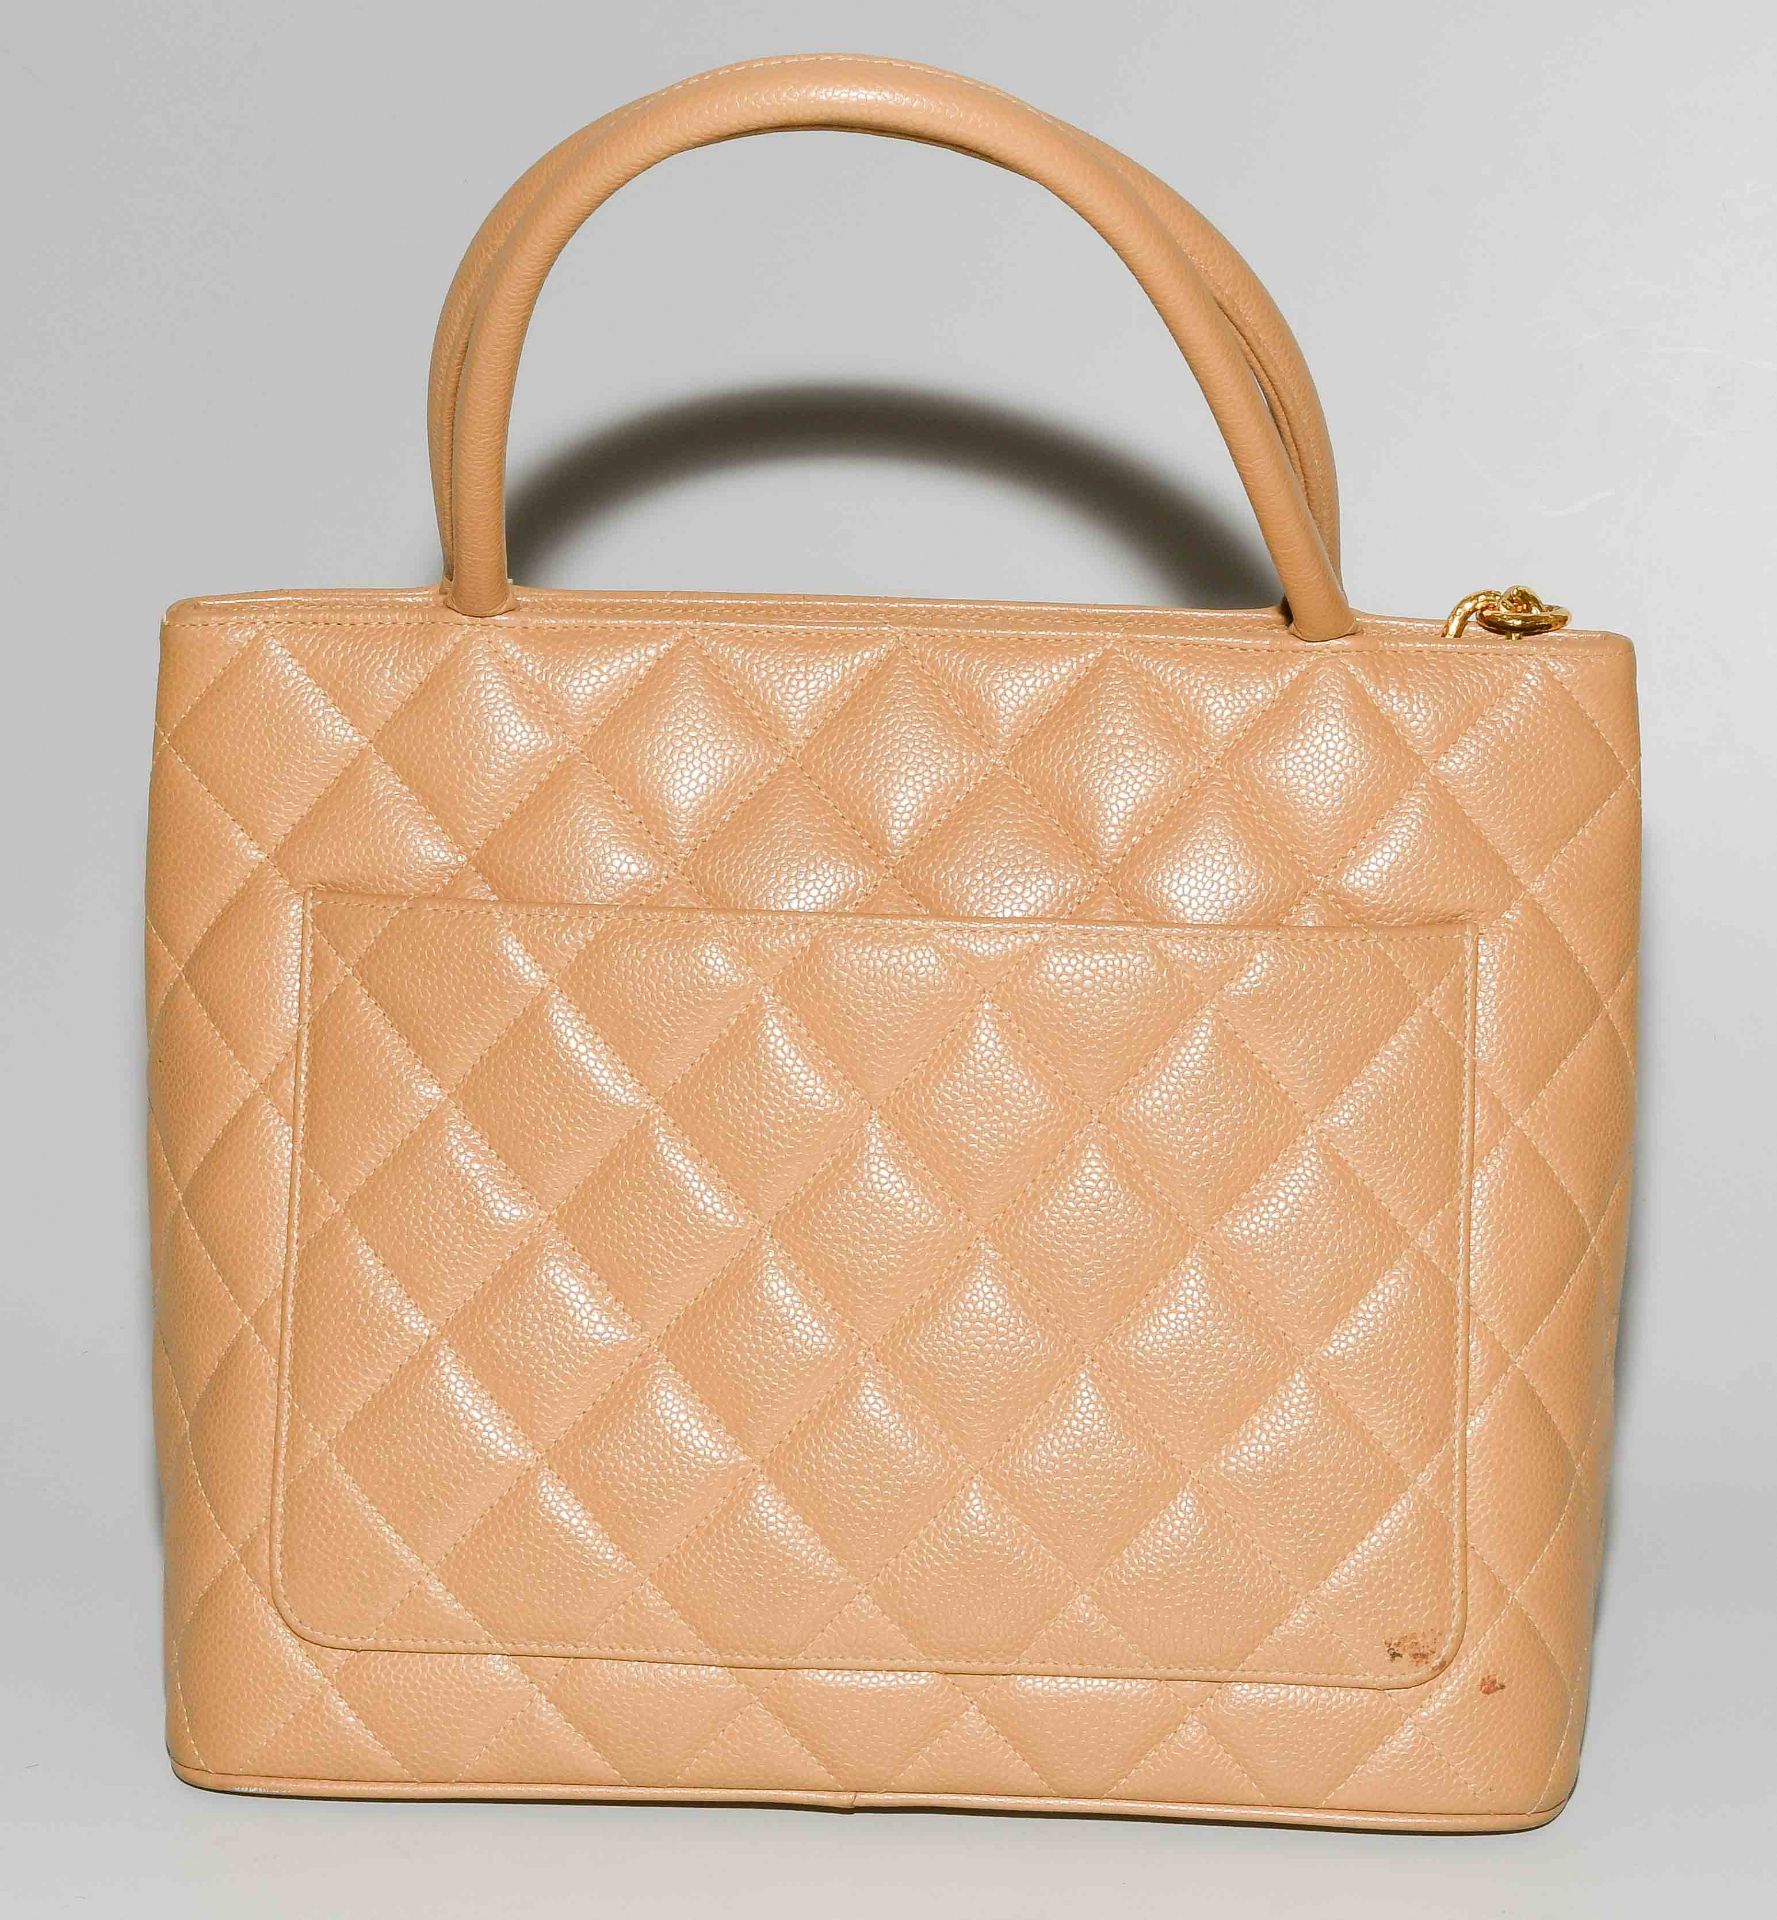 Chanel, Handtasche "Medaillon" - Bild 4 aus 10